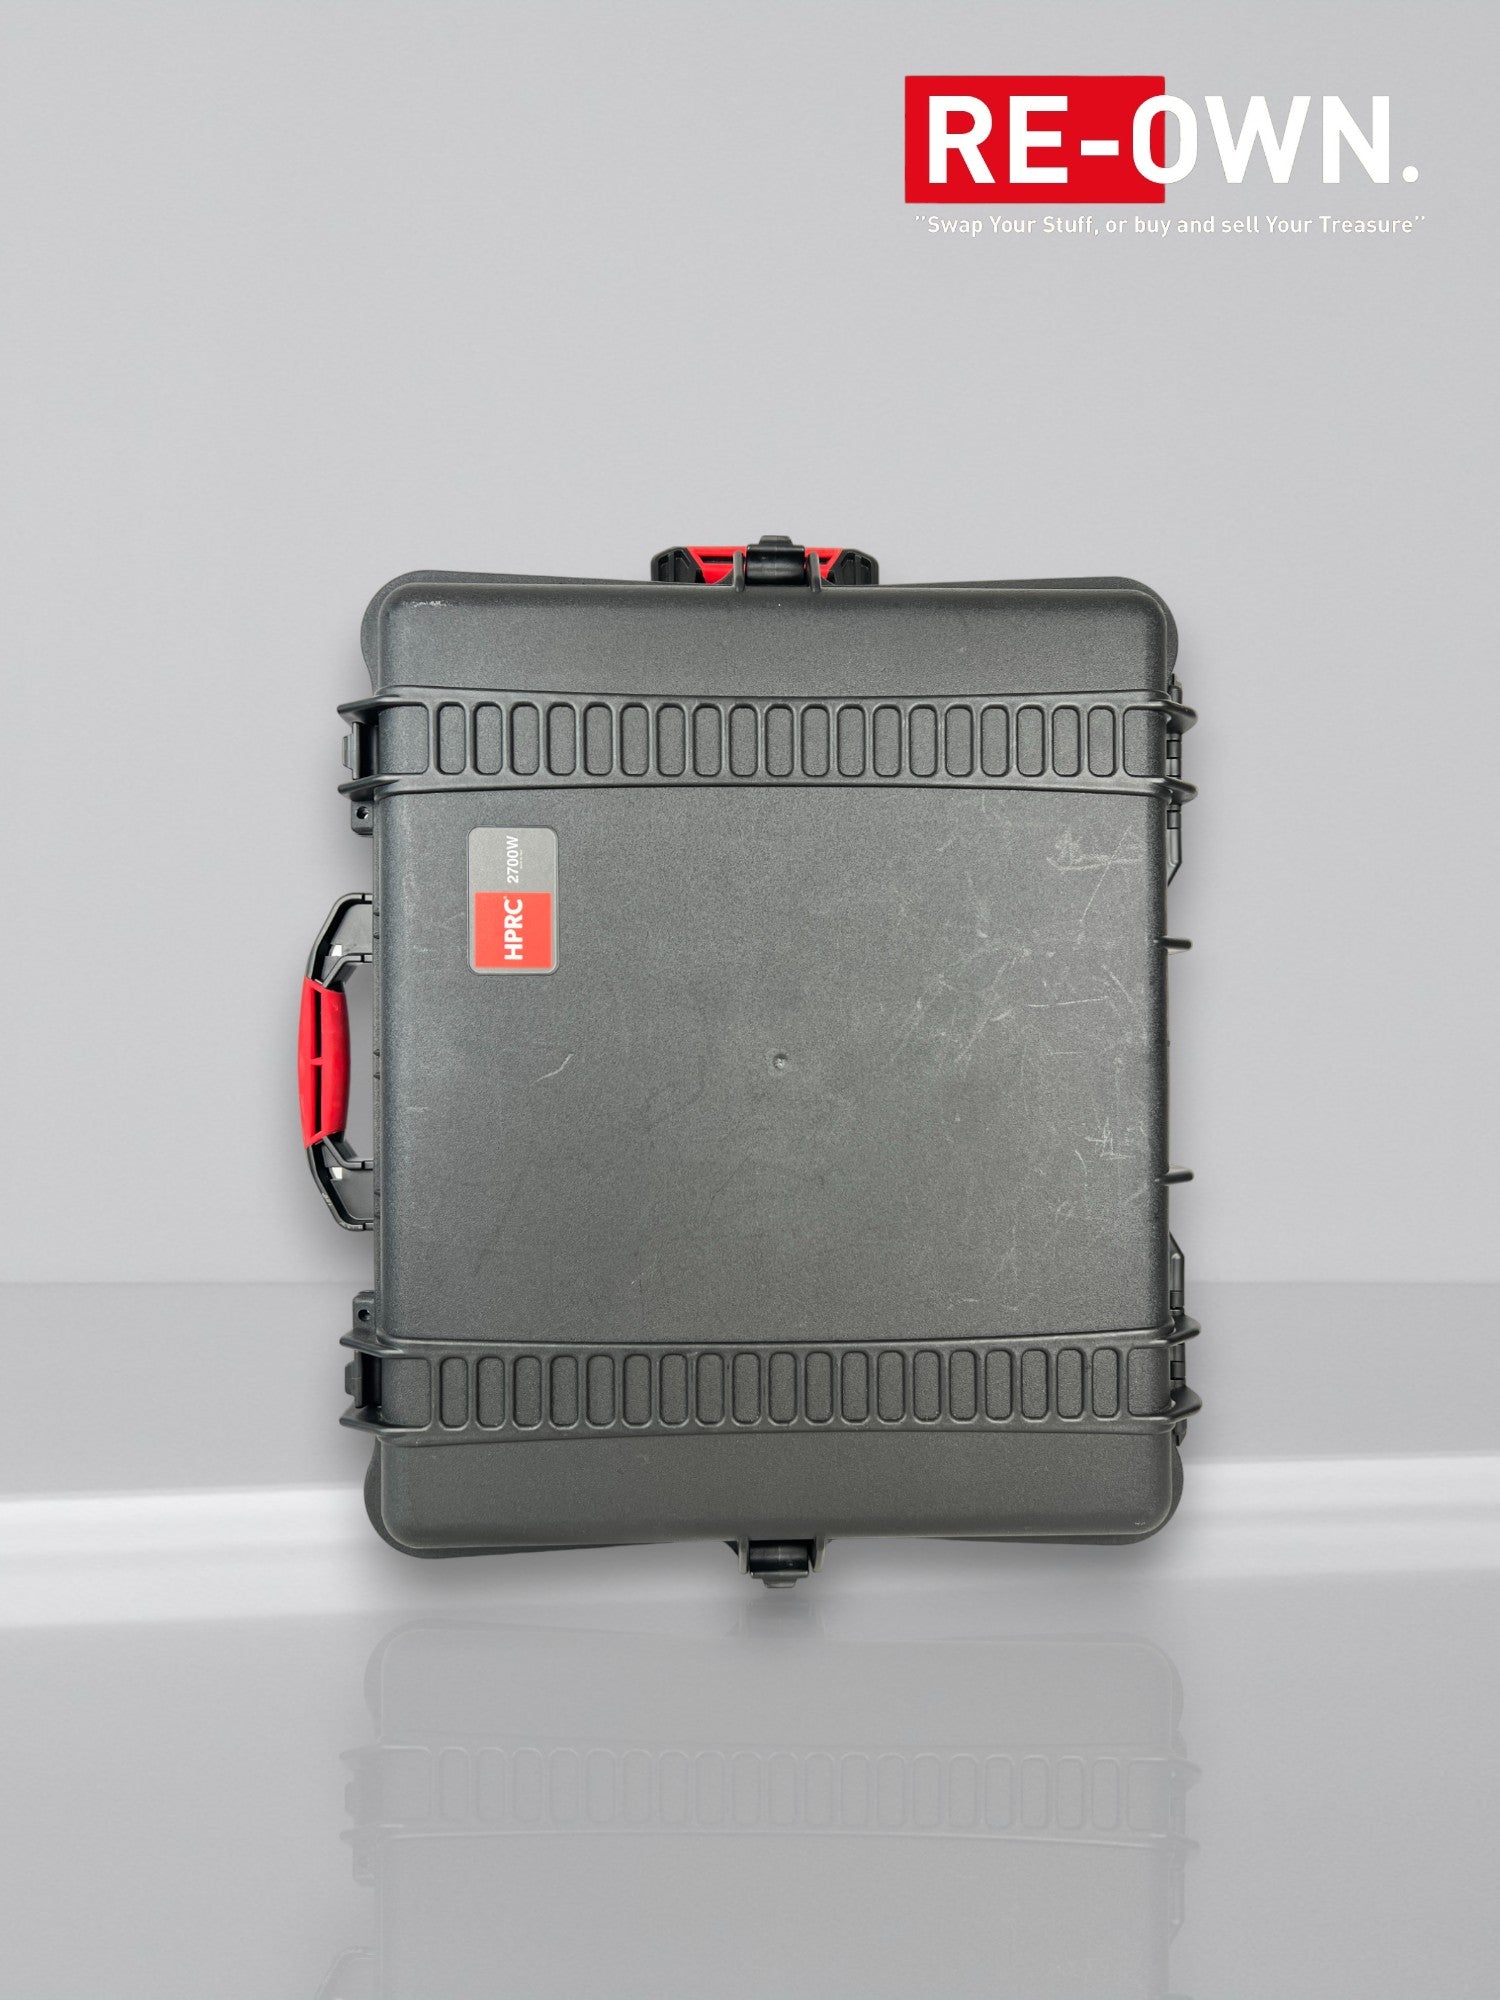 HPRC 2700W Case / koffer + foam ( foto/video/drone) trolley